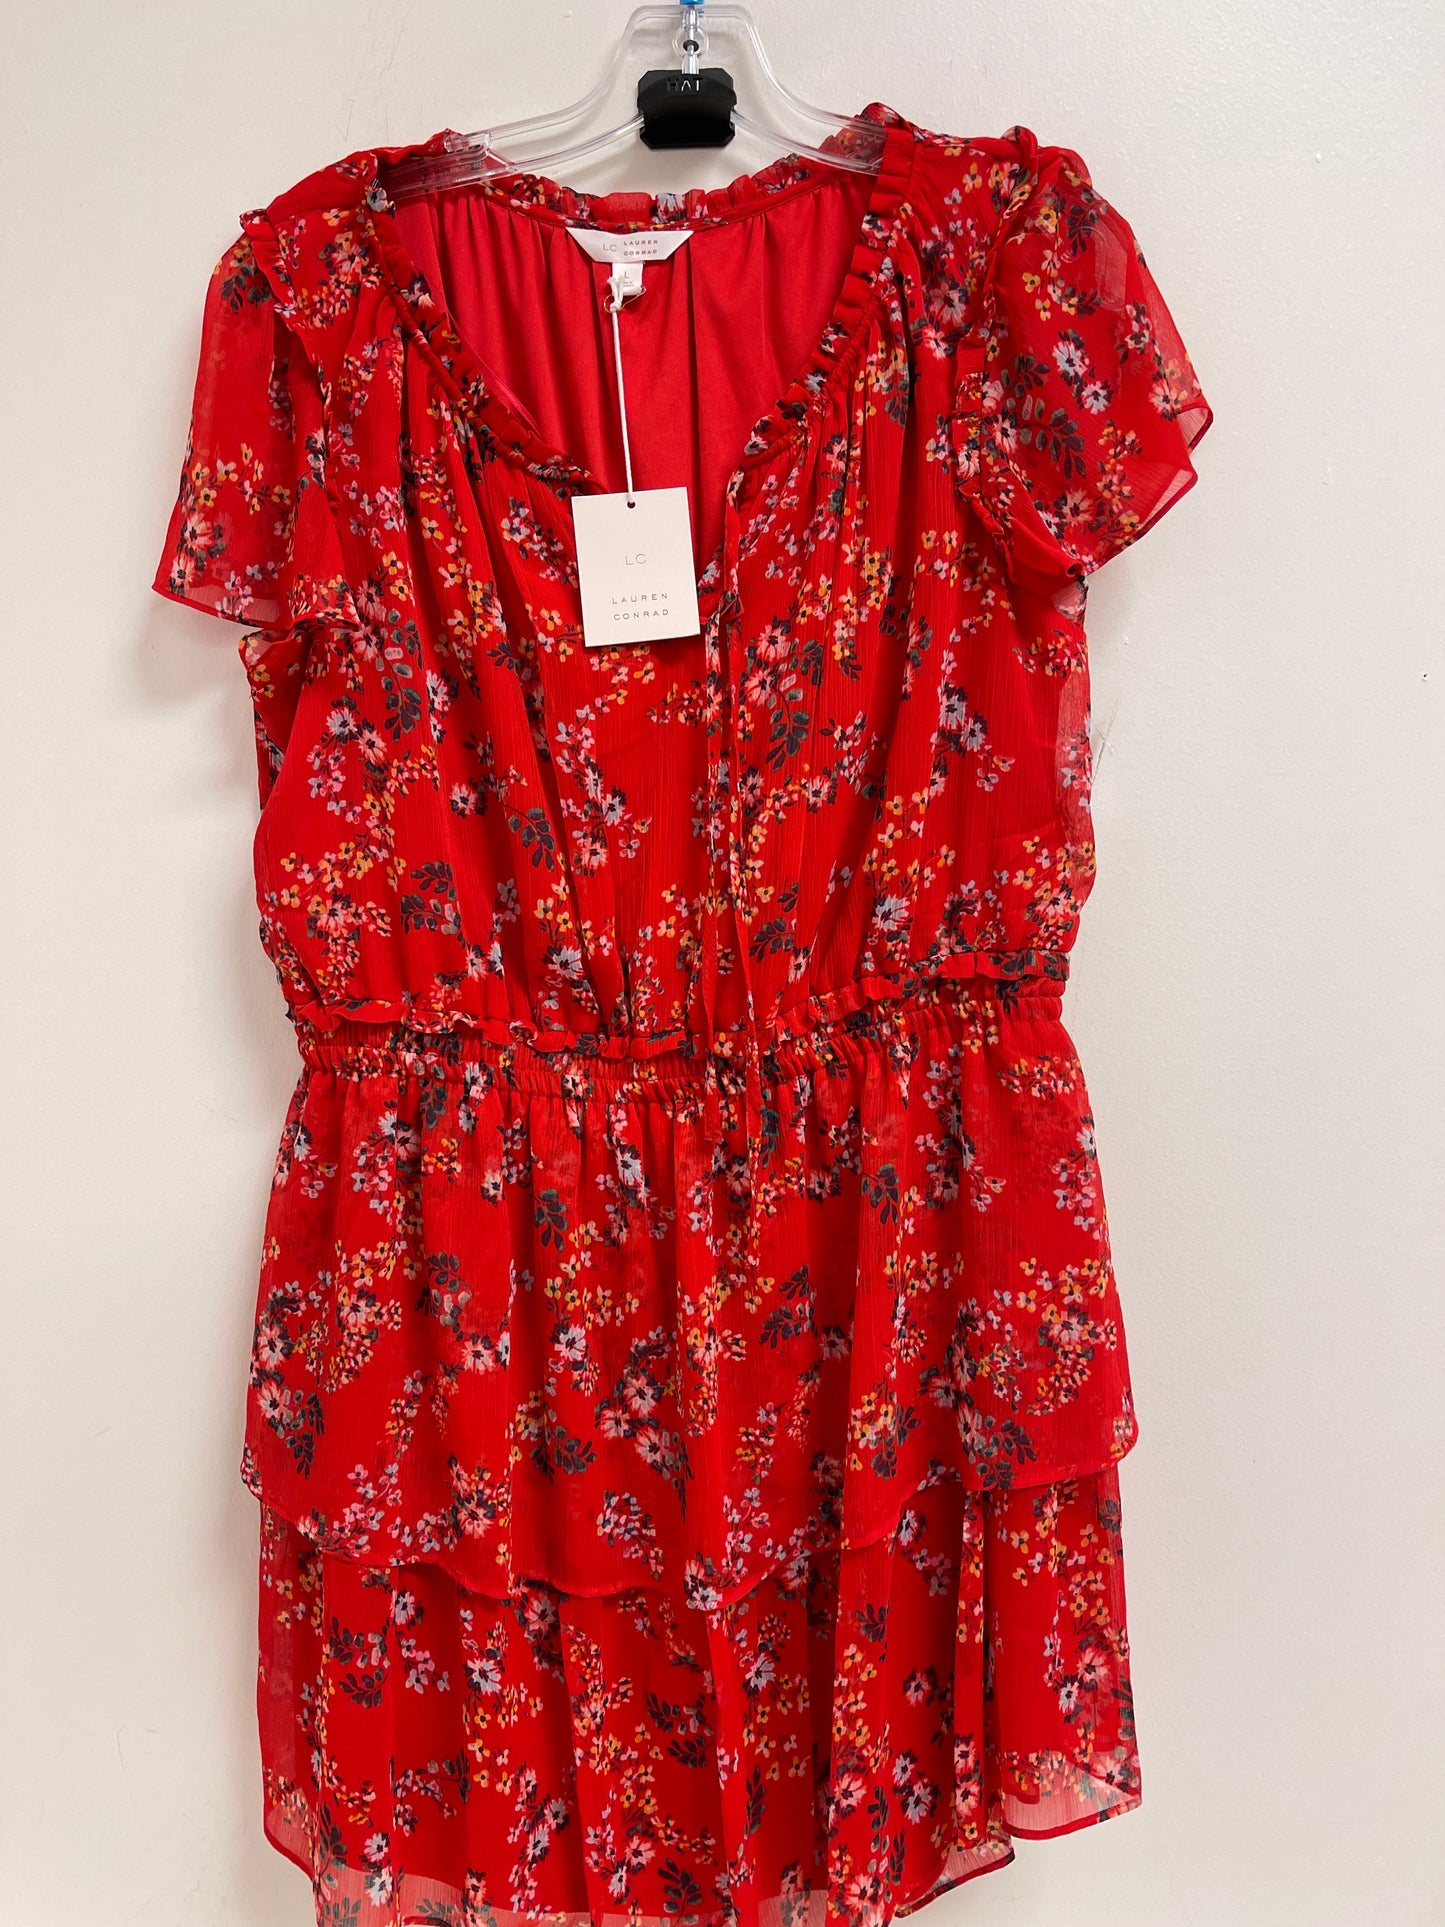 Red Dress Casual Midi Lc Lauren Conrad, Size L